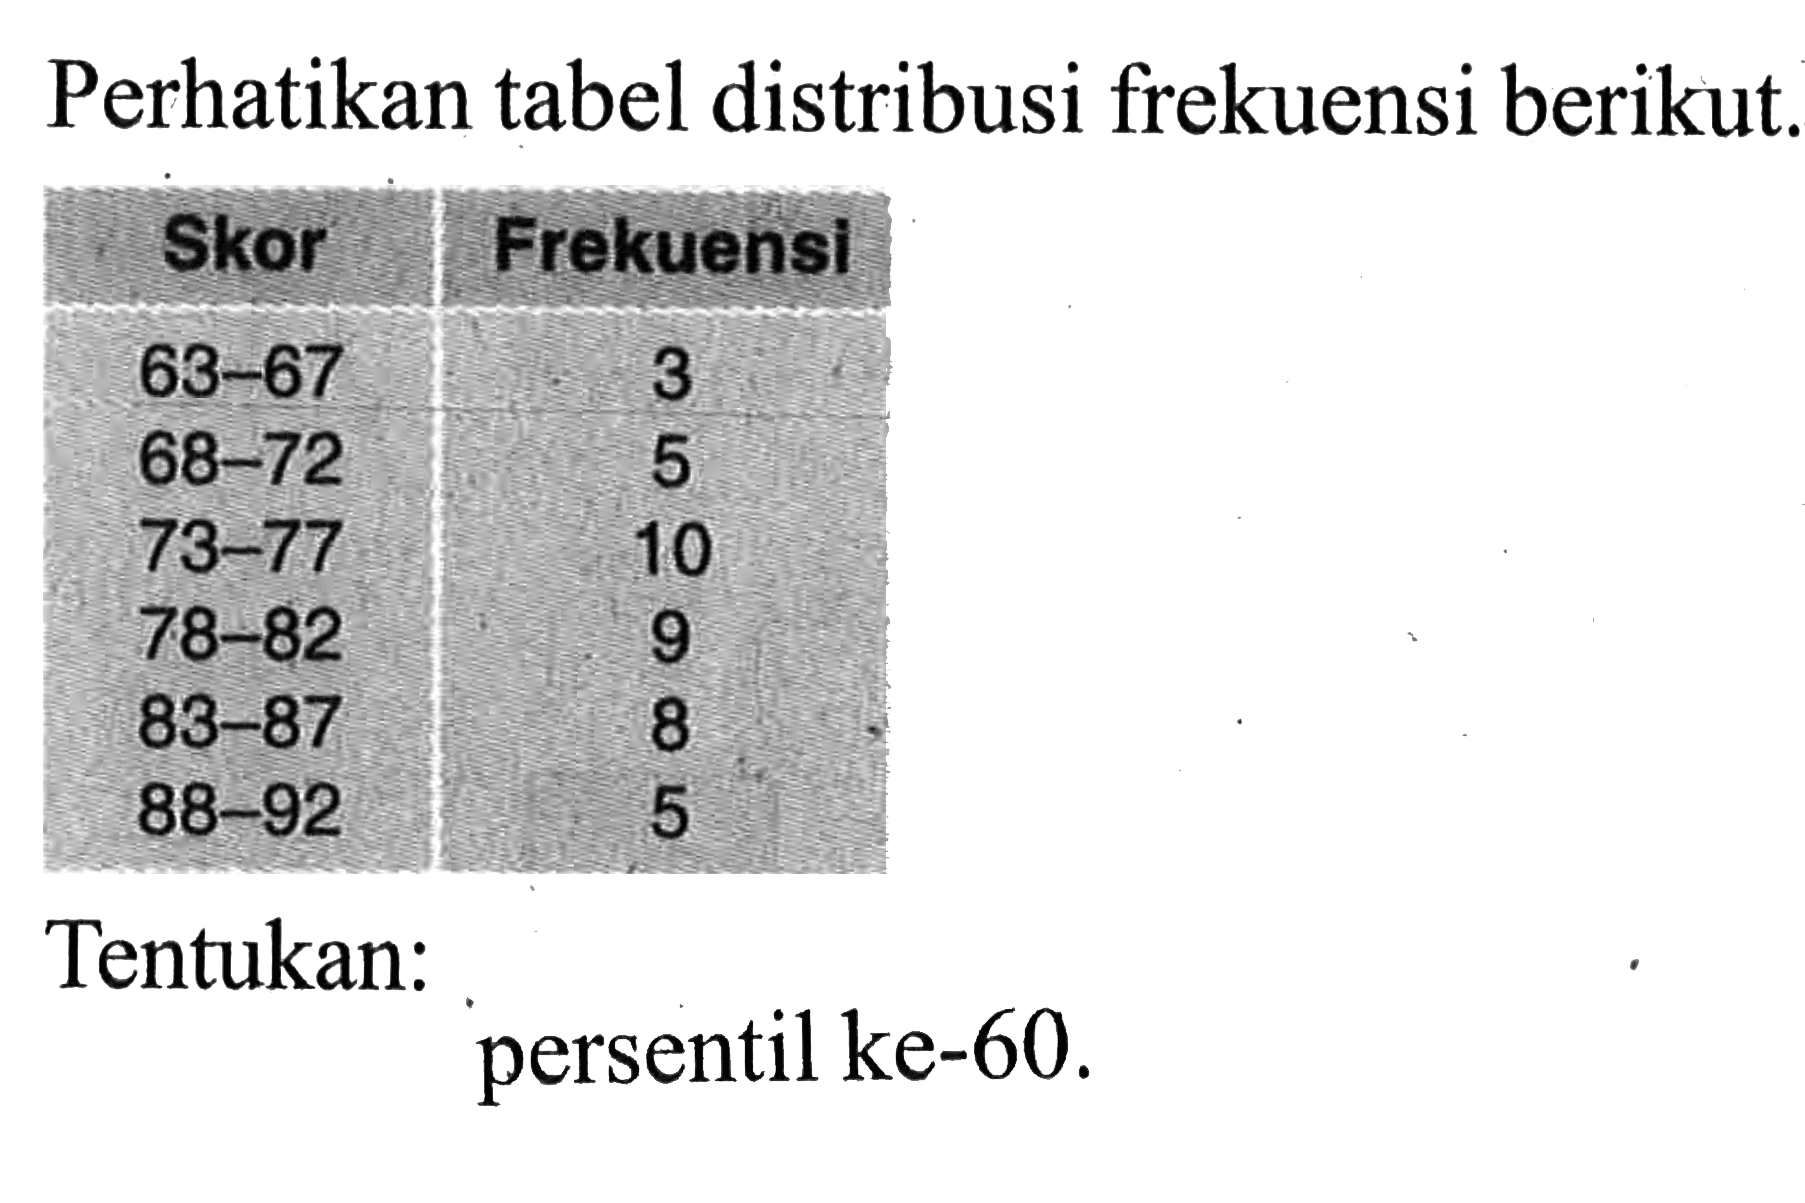 Perhatikan tabel distribusi frekuensi berikut. Skor Frekuensi 63 - 67 3 68 - 72 5 73 - 77 10 78 - 82 9 83 - 87 8 88 - 92 5 Tentukan: persentil ke-60.